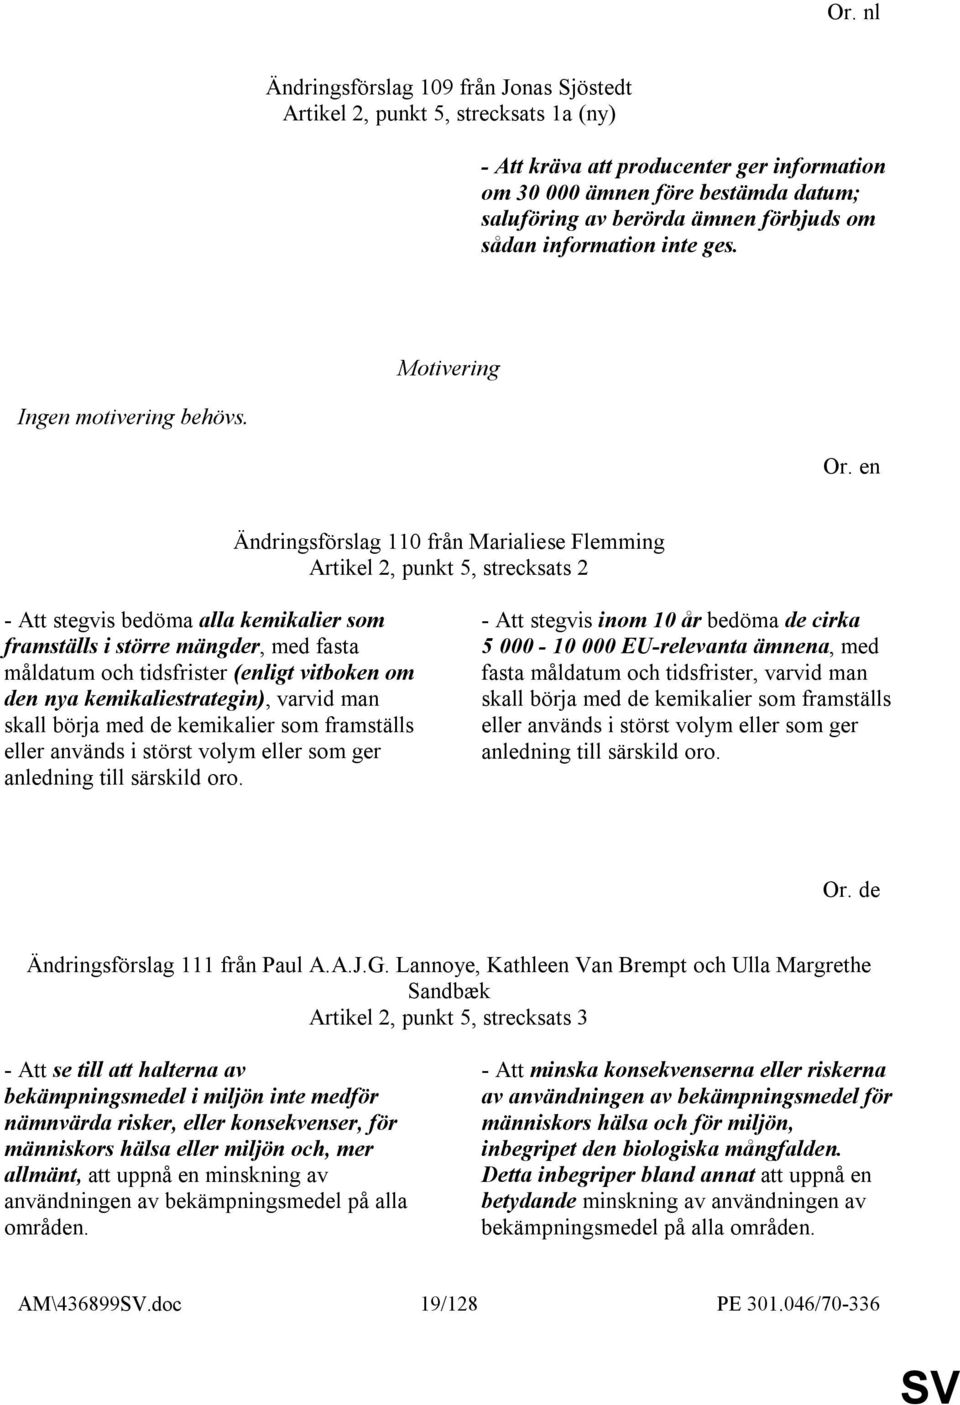 Ändringsförslag 110 från Marialiese Flemming Artikel 2, punkt 5, strecksats 2 - Att stegvis bedöma alla kemikalier som framställs i större mängder, med fasta måldatum och tidsfrister (enligt vitboken